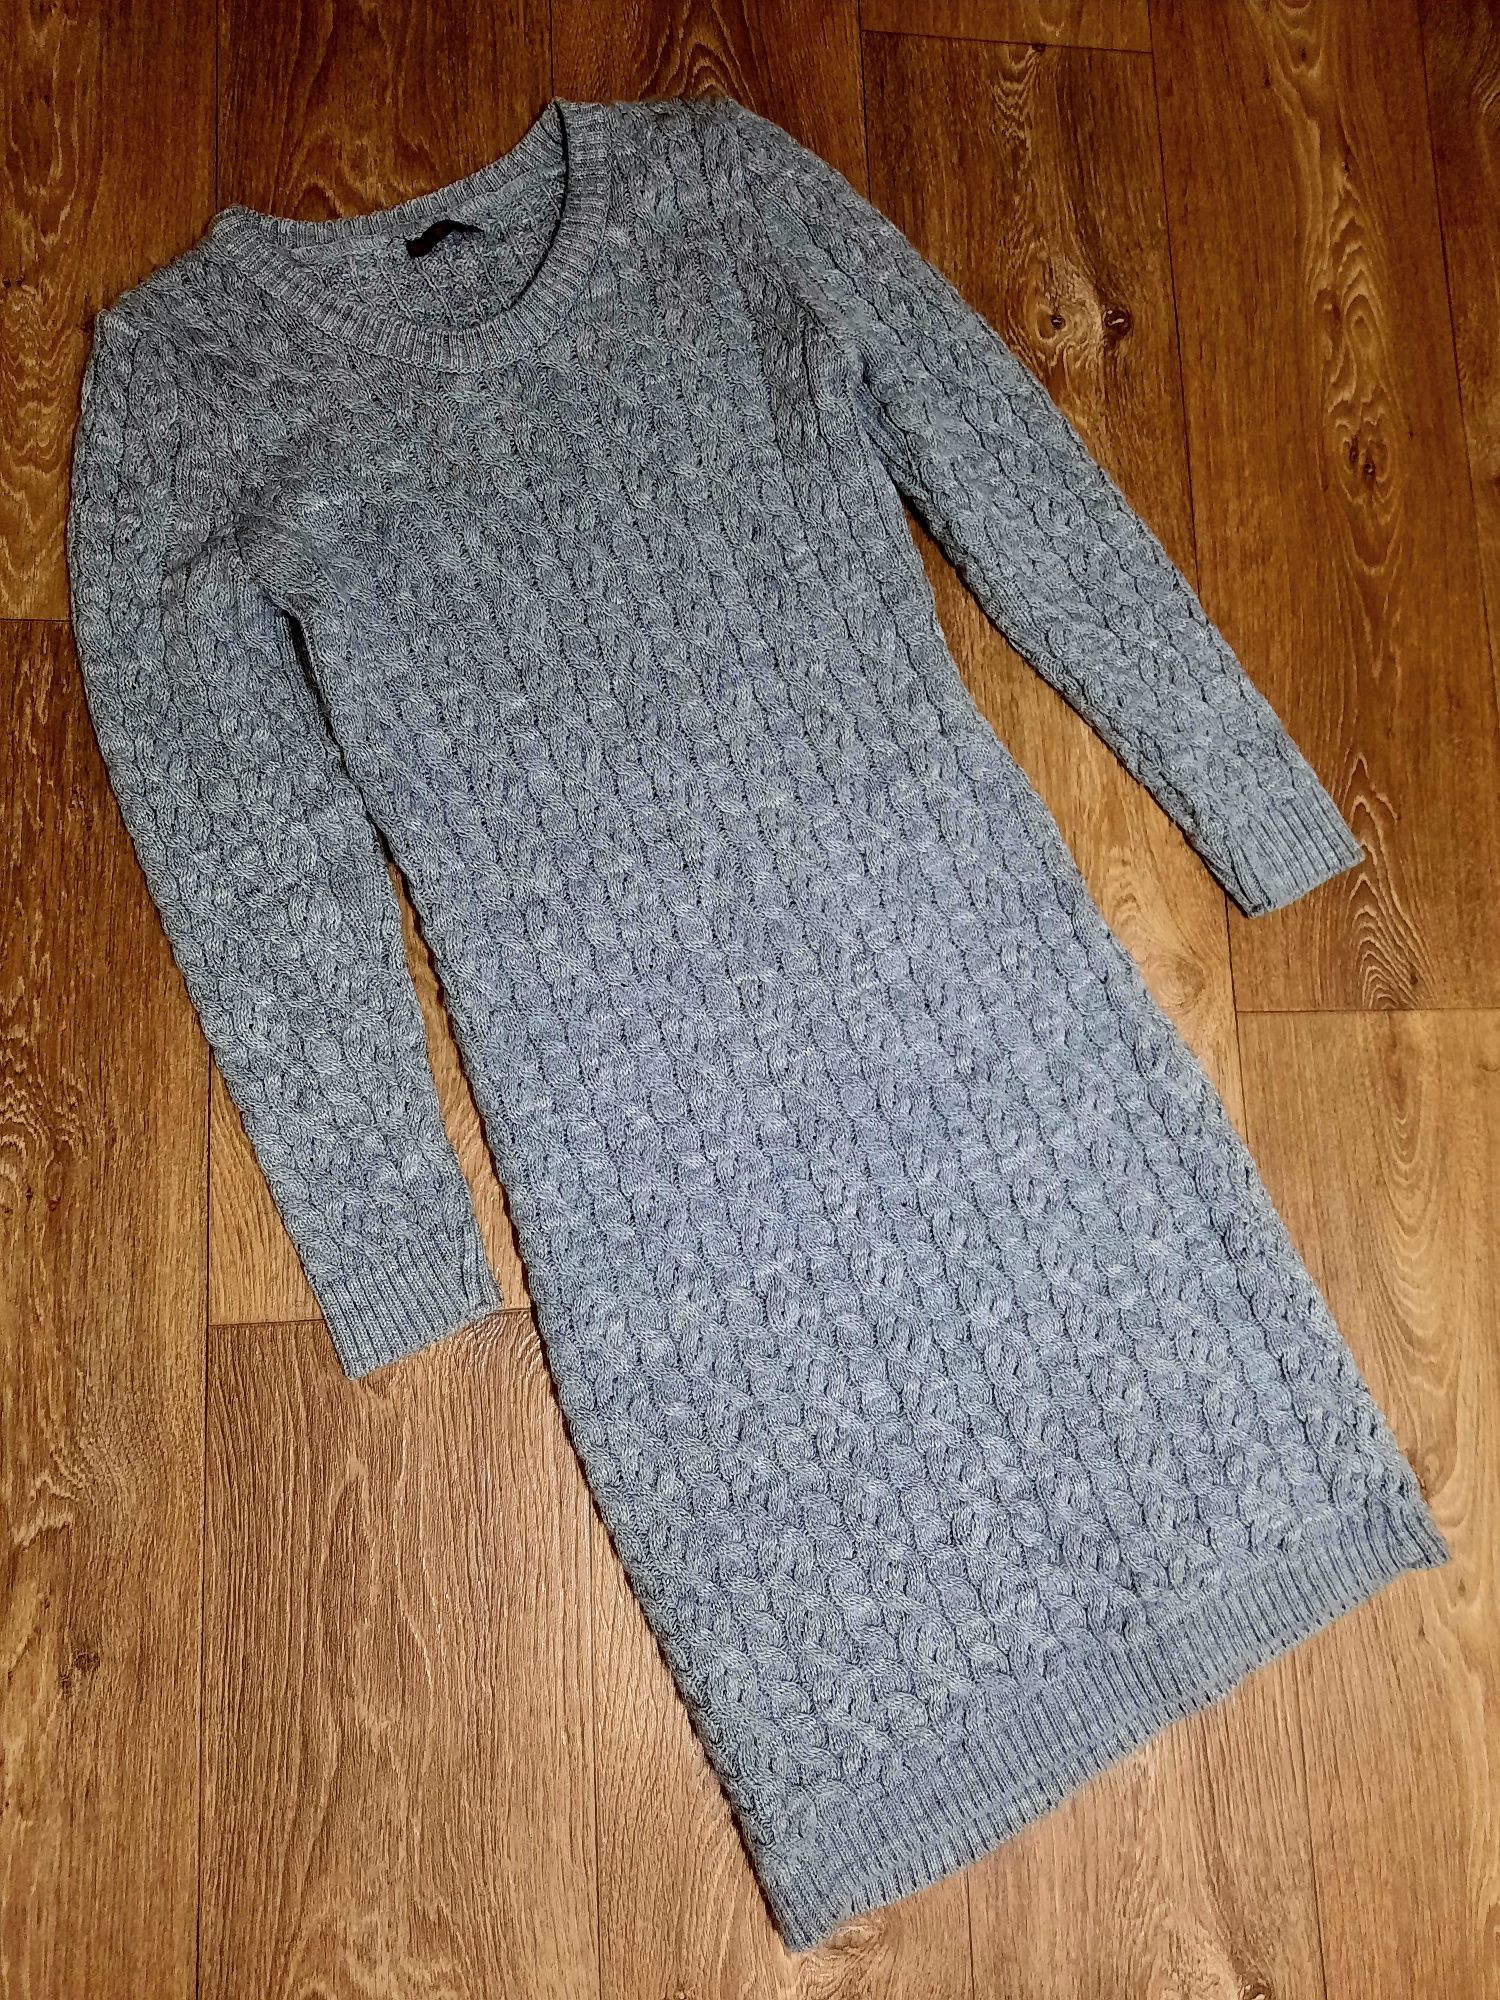 Женское вязаное платье 44-46 р М-L